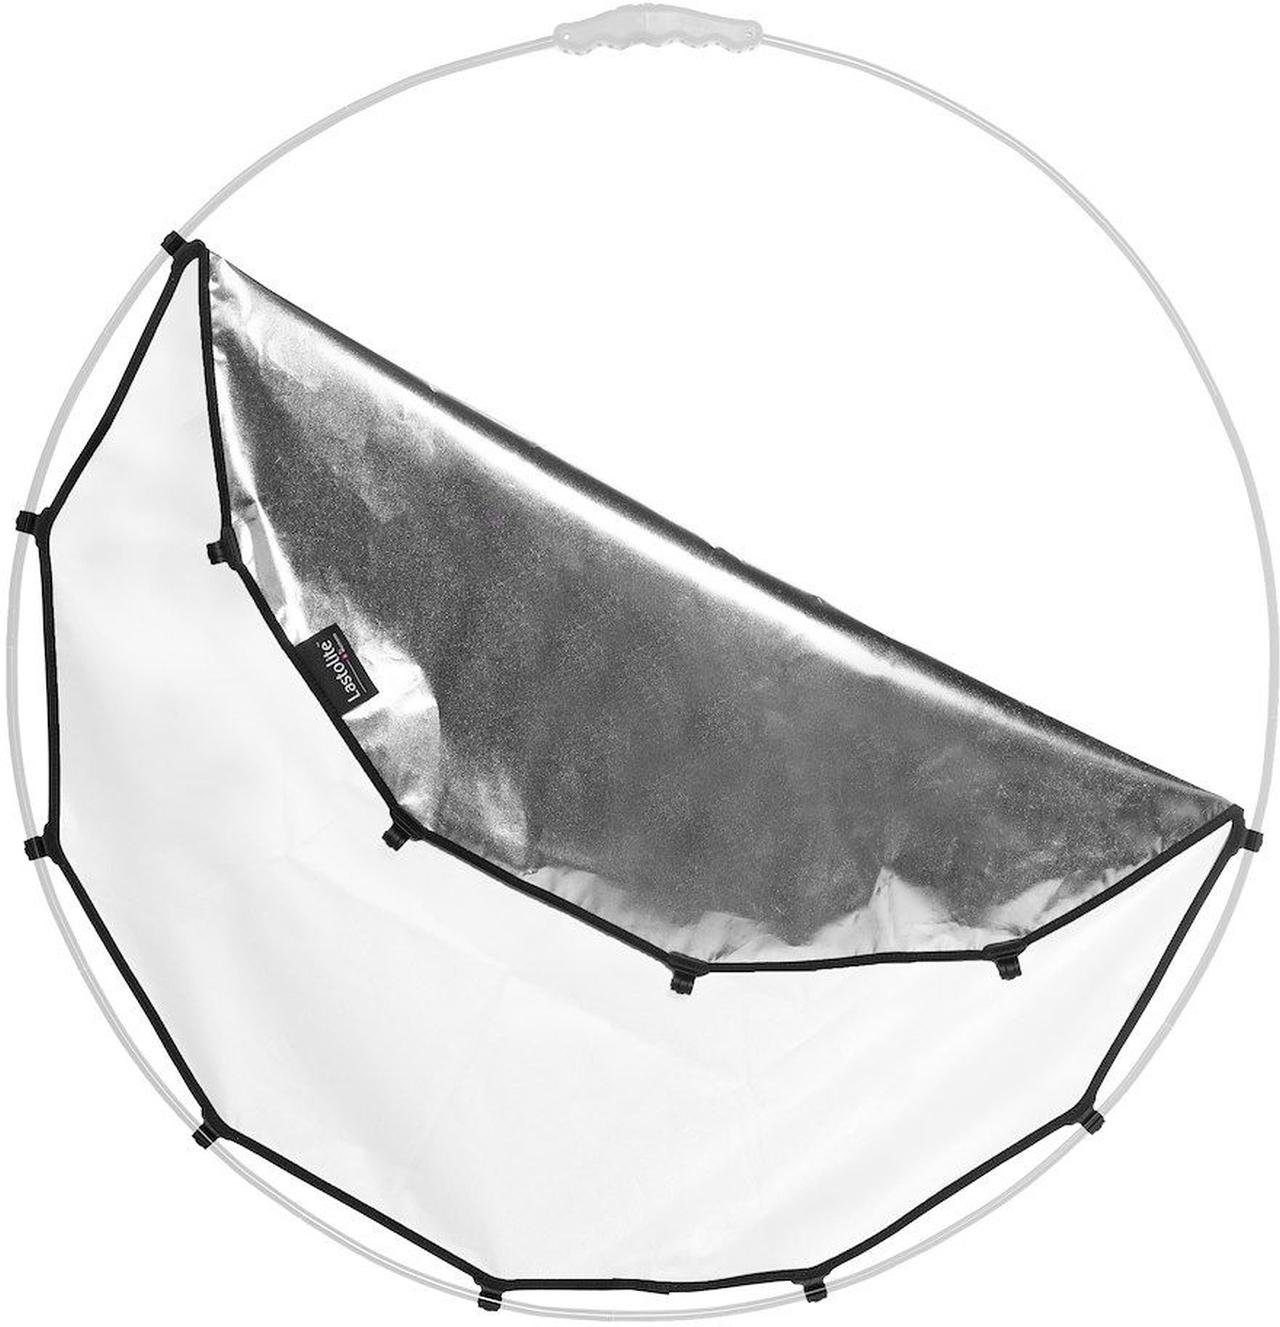 Lastolite LR3302 HaloCompact Objektivzubehör 82cm Silber/Weiss Cover